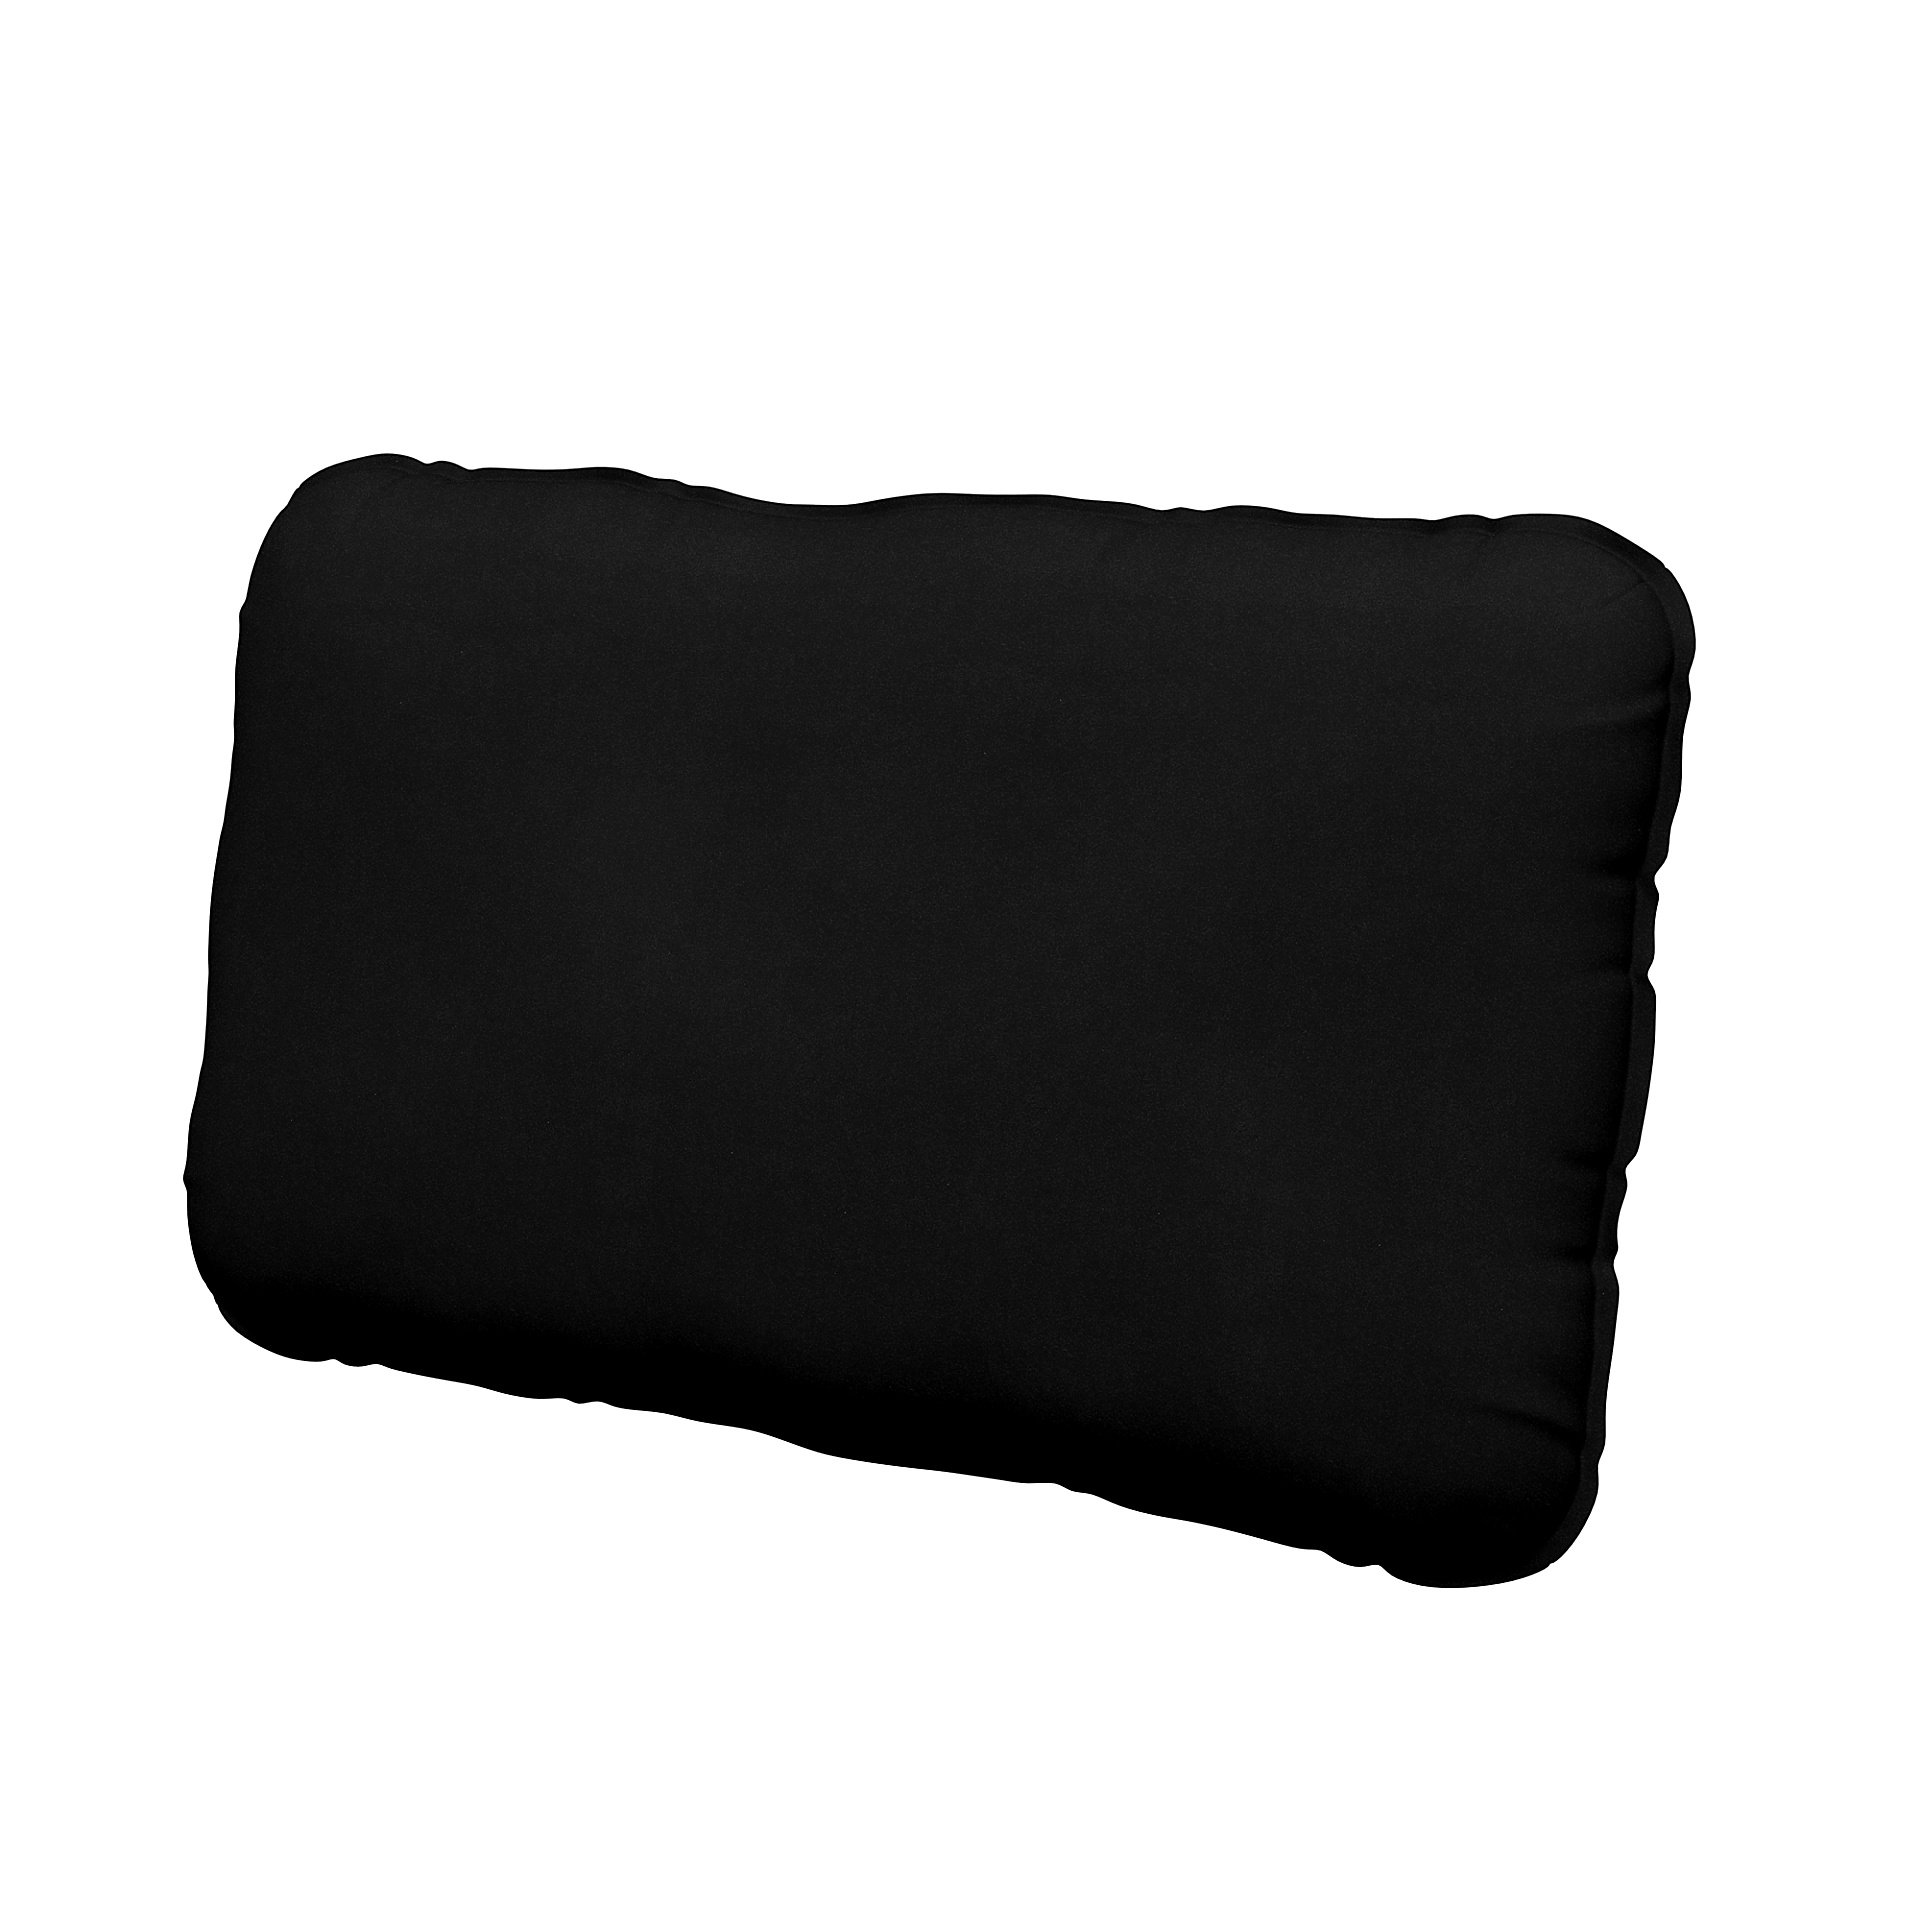 IKEA - Vallentuna back cushion cover 40x75cm, Black, Velvet - Bemz